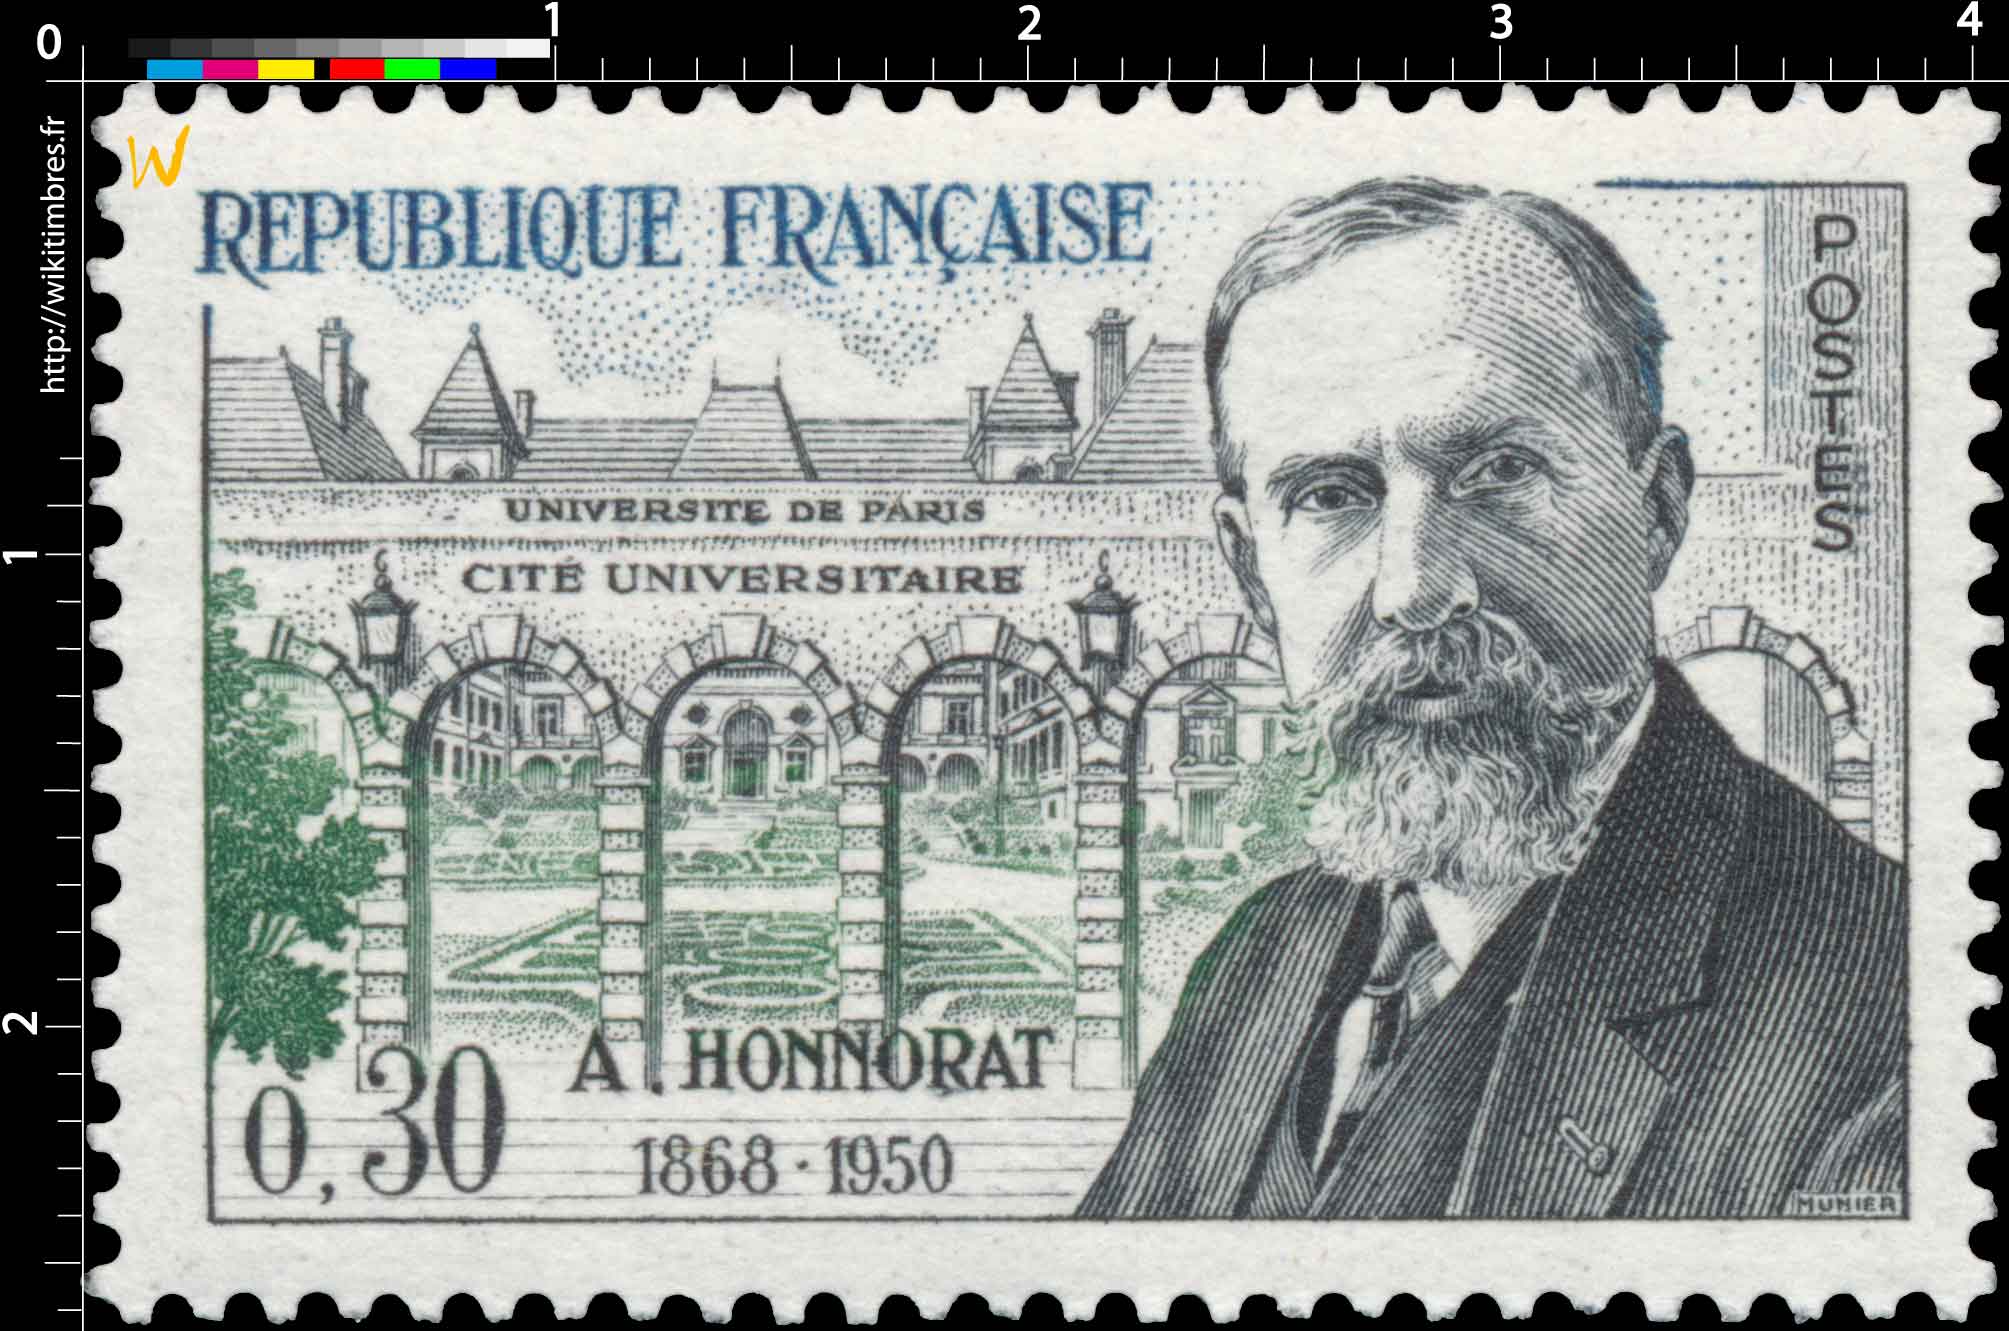 UNIVERSITÉ DE PARIS CITÉ UNIVERSITAIRE A. HONNORAT 1868-1950